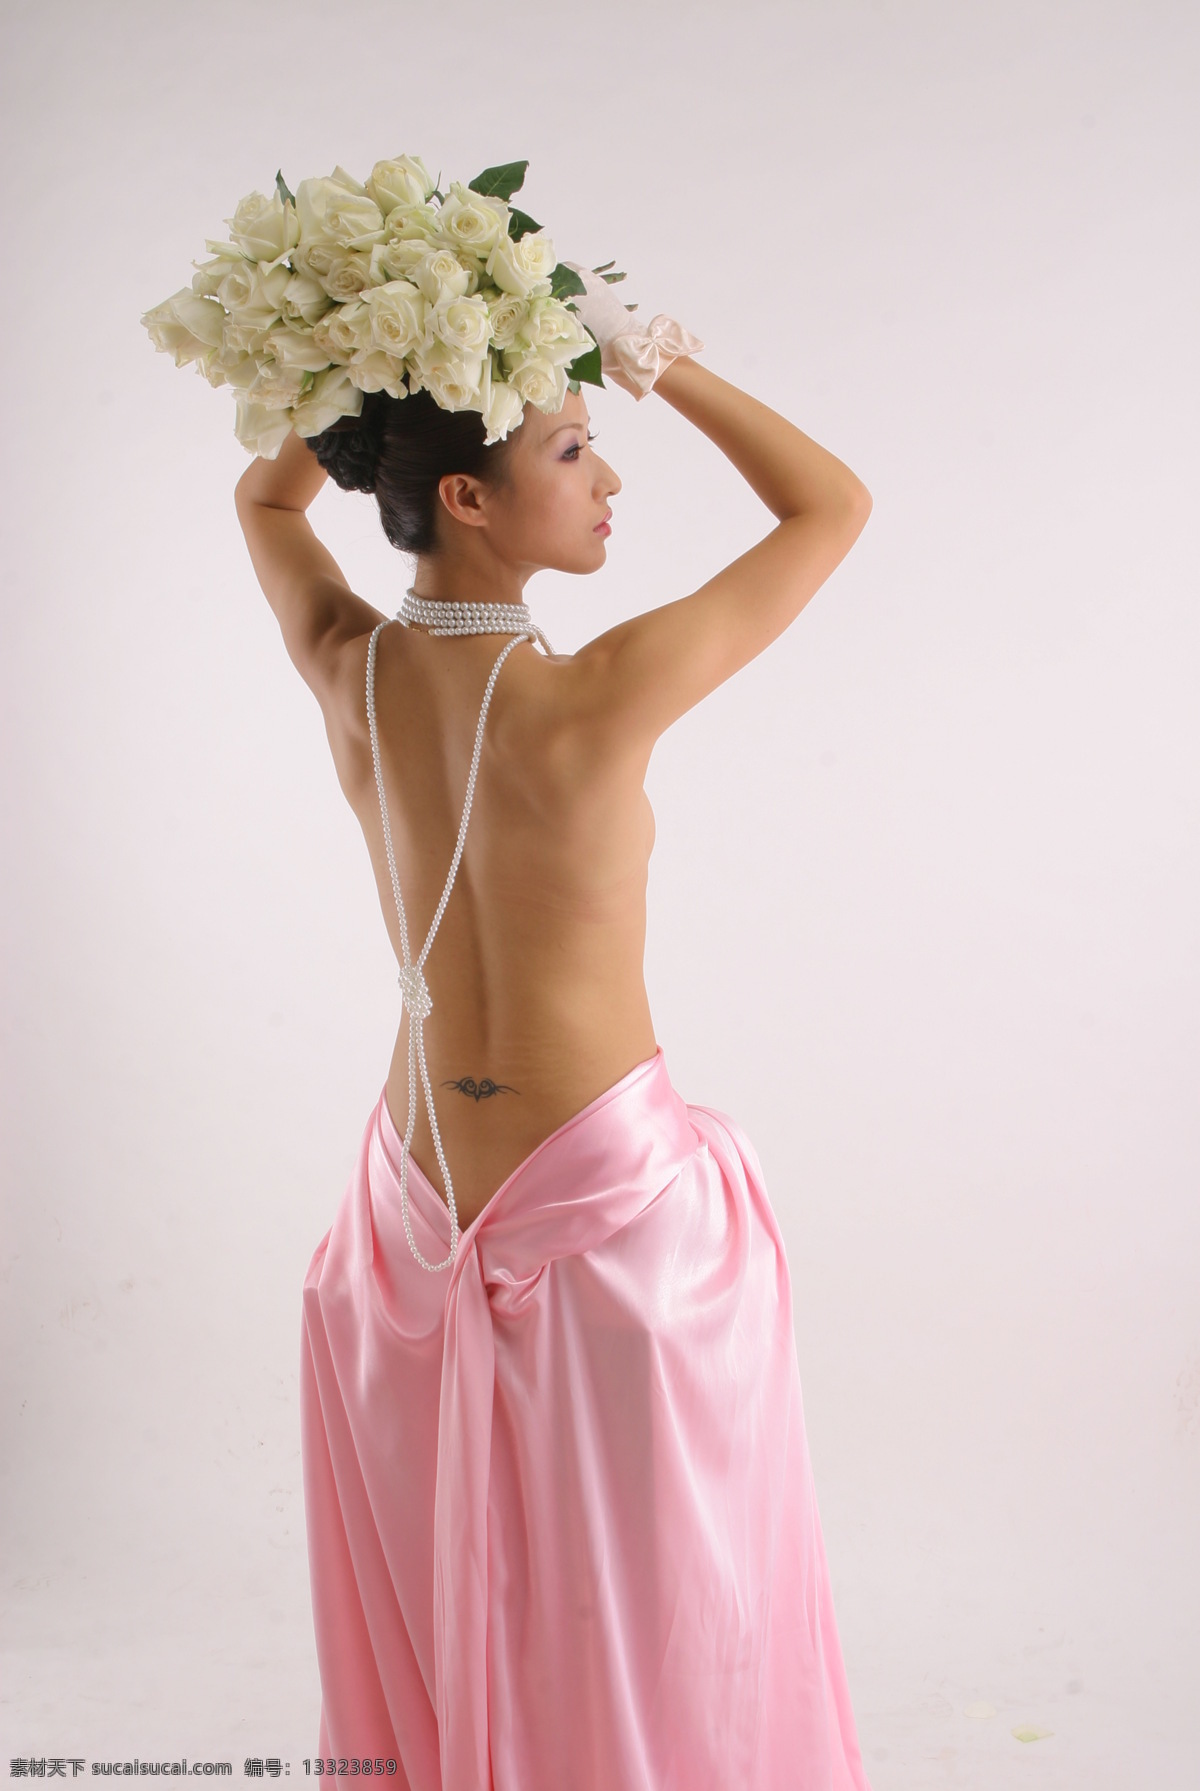 女人 写真 性感 造型 室内 模特 大方 个性 服装 花 女性女人 人物图库